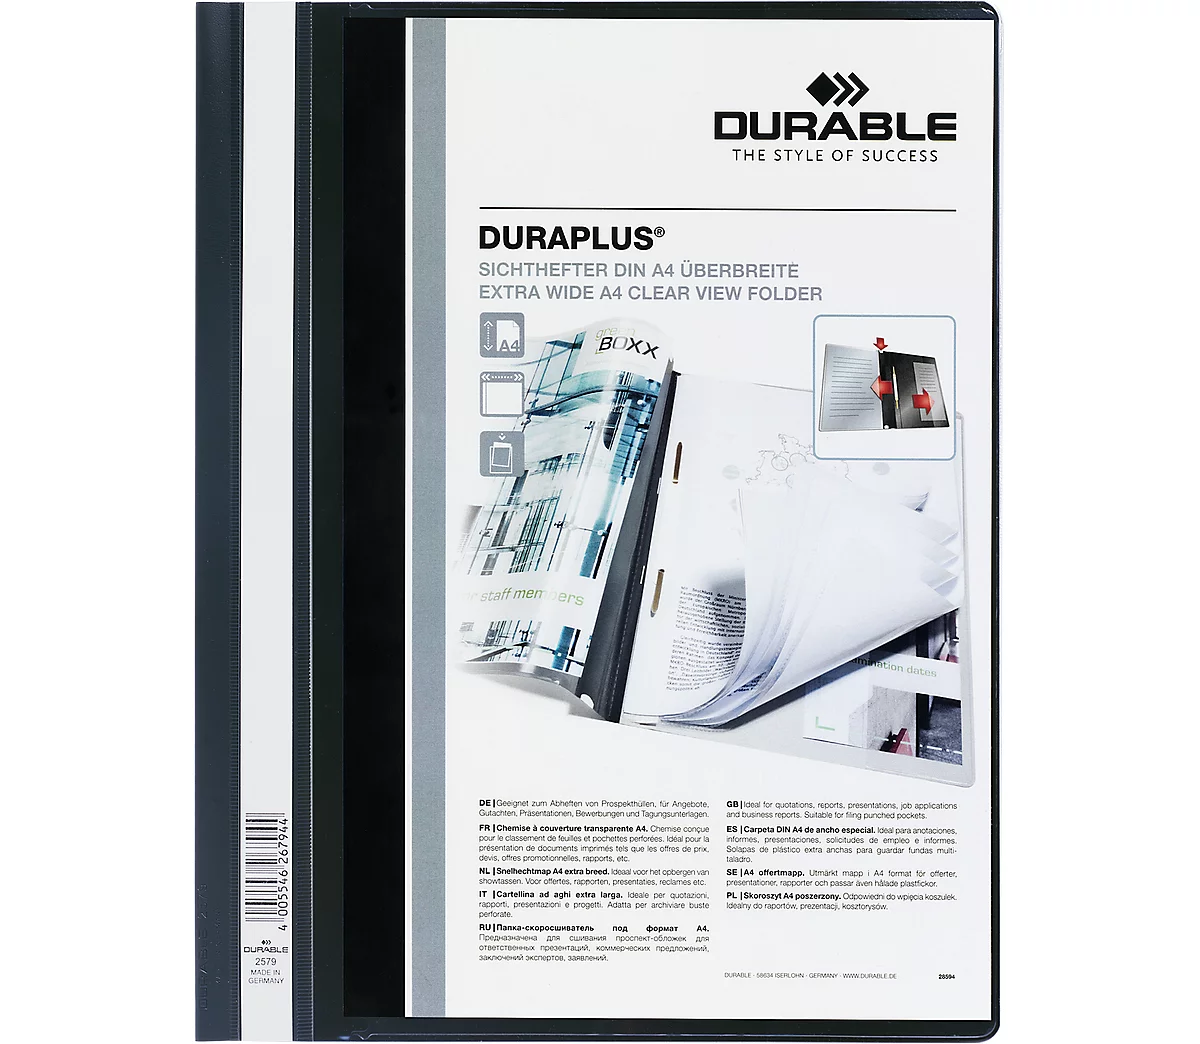 DURABLE Präsentations-Sichthefter DURAPLUS extrabreit, PVC-Hartfolie, 25 Stück, schwarz